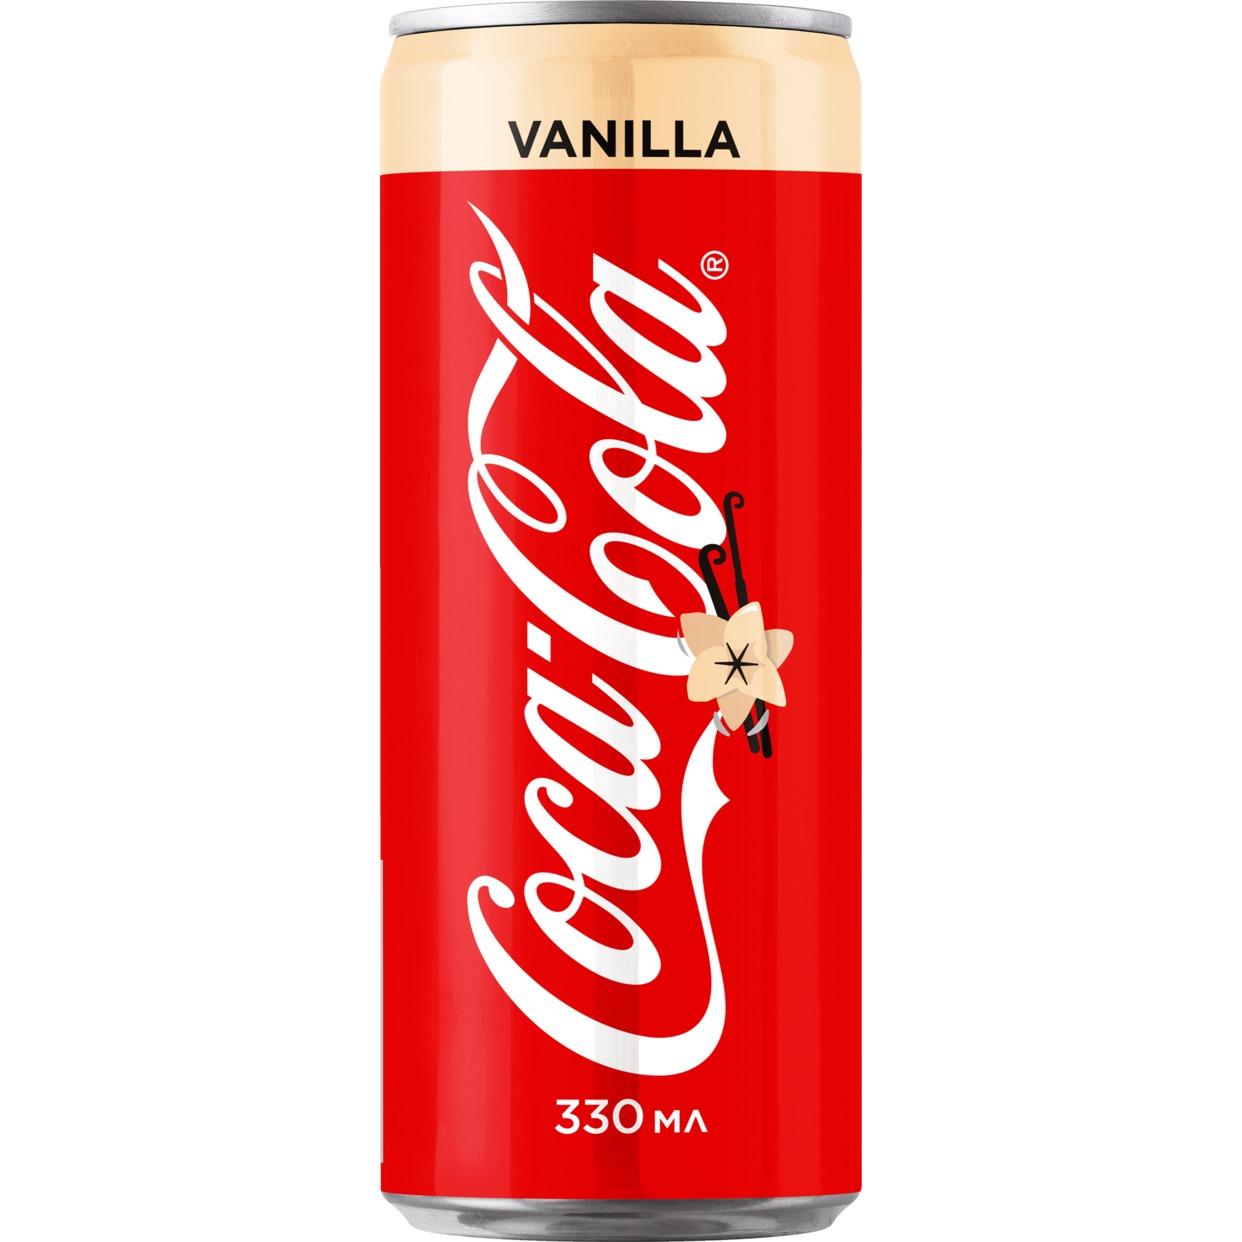 «Кока-Кола Ванилла ®» напиток безалкогольный сильногазированный, 0.33л по акции в Пятерочке